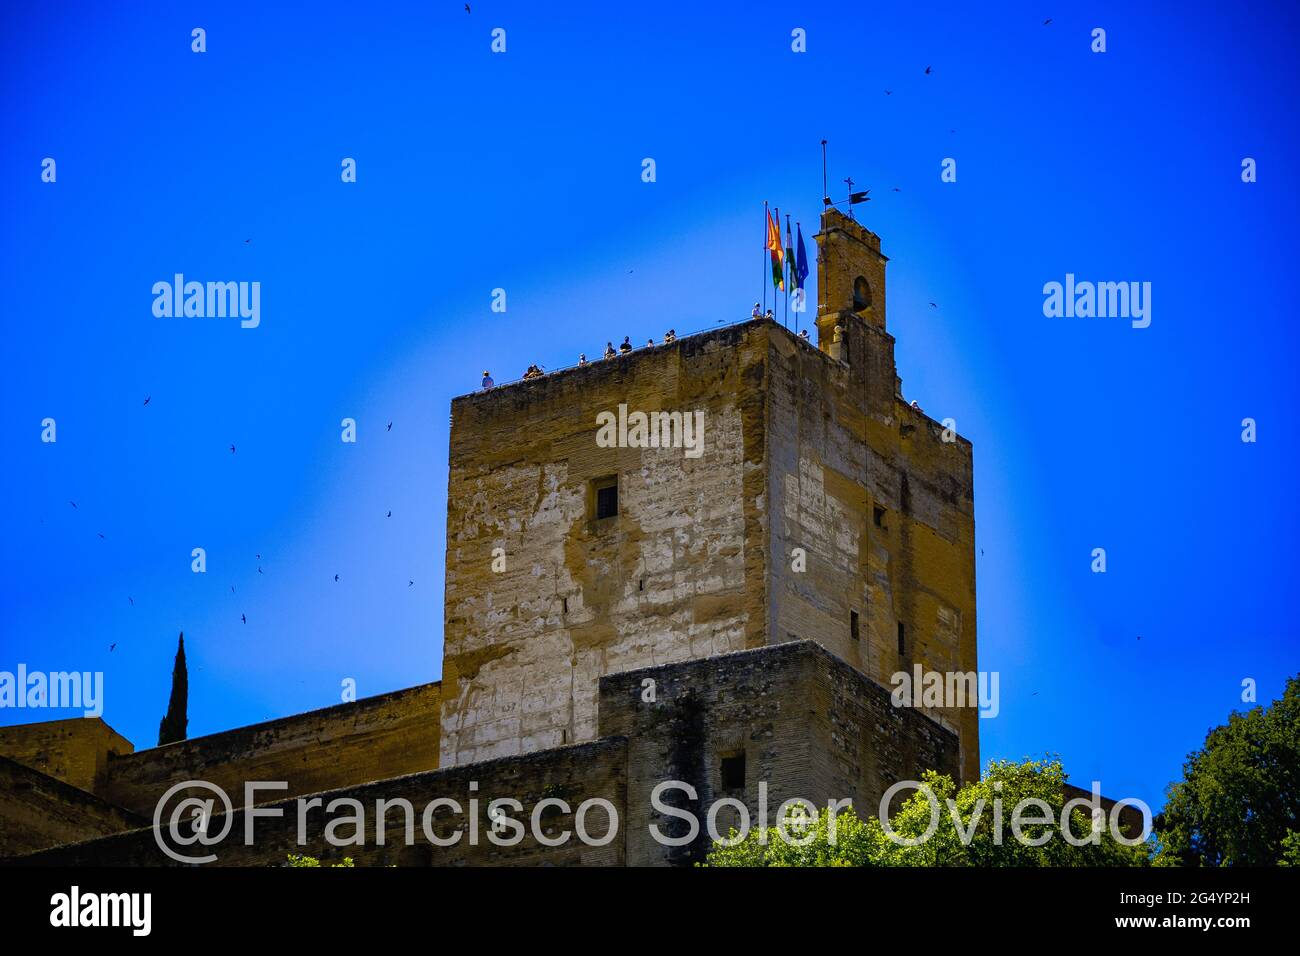 La Alhambra de Granada situada en la parte más occidental del cerro de Sabika, de planta trapezoidal algo errat, constituía la zona militar, Foto Stock